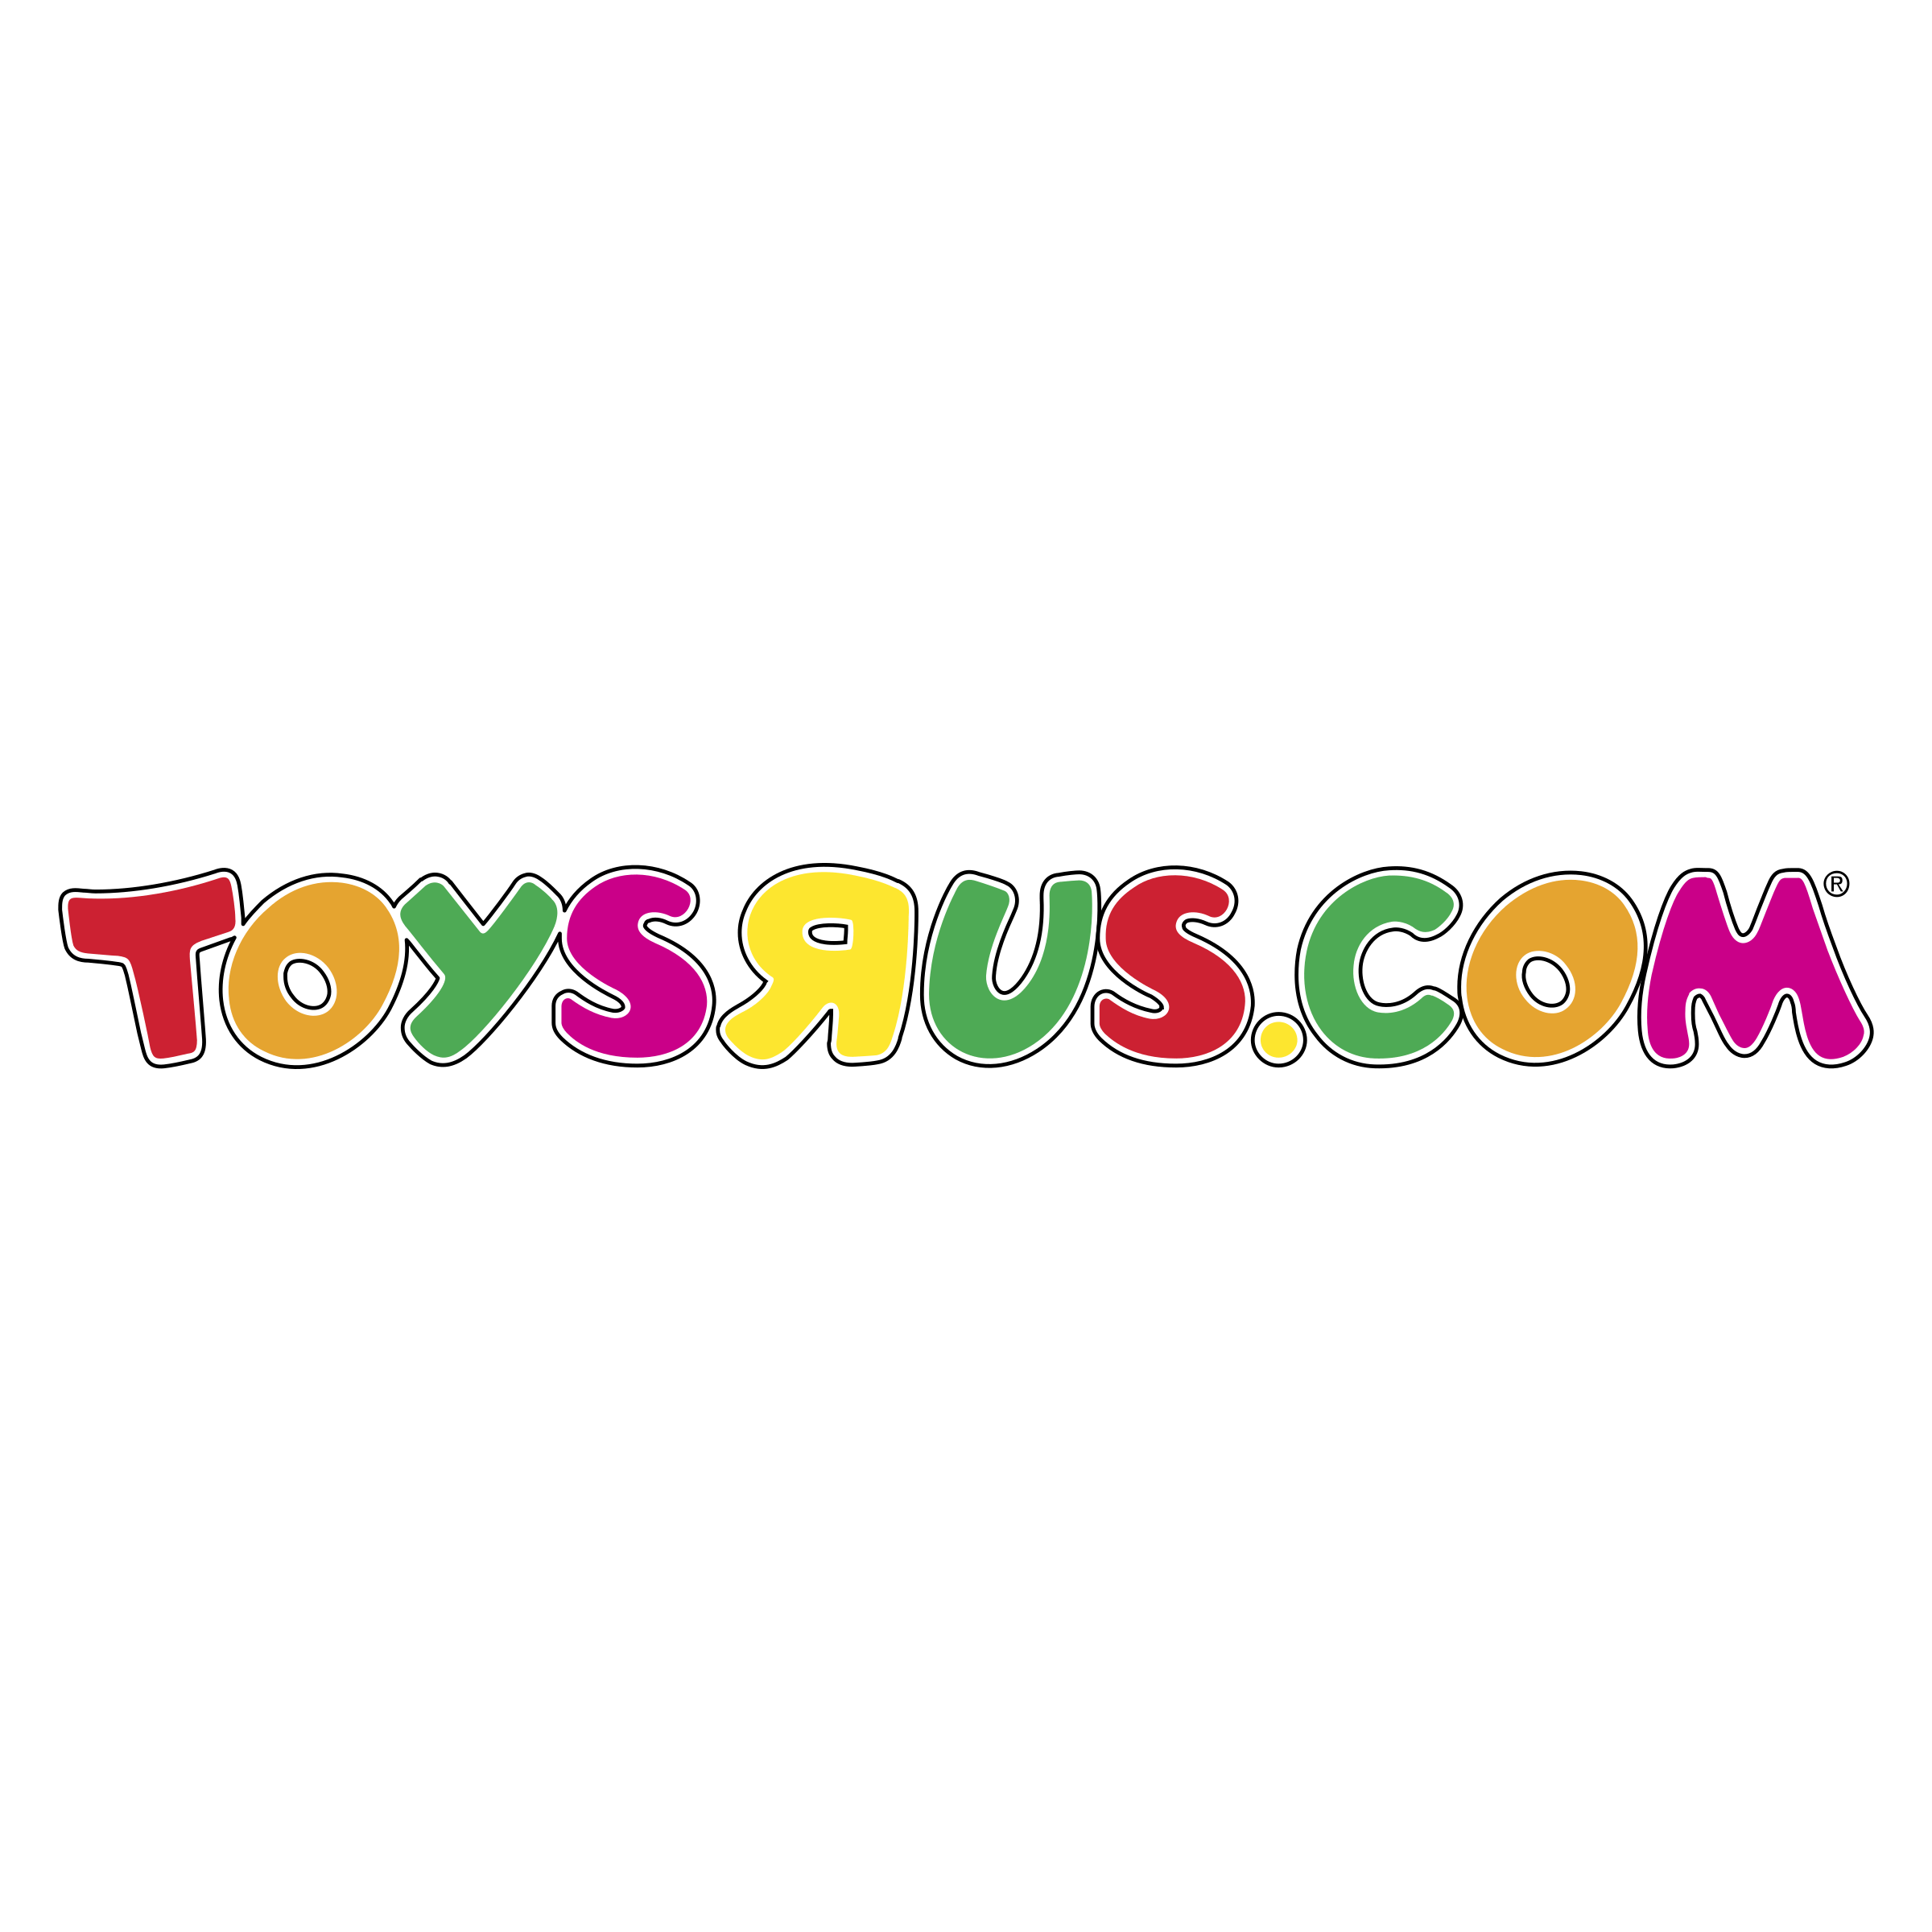 Toysrus.com Logo - toysrus com Logo PNG Transparent & SVG Vector - Freebie Supply